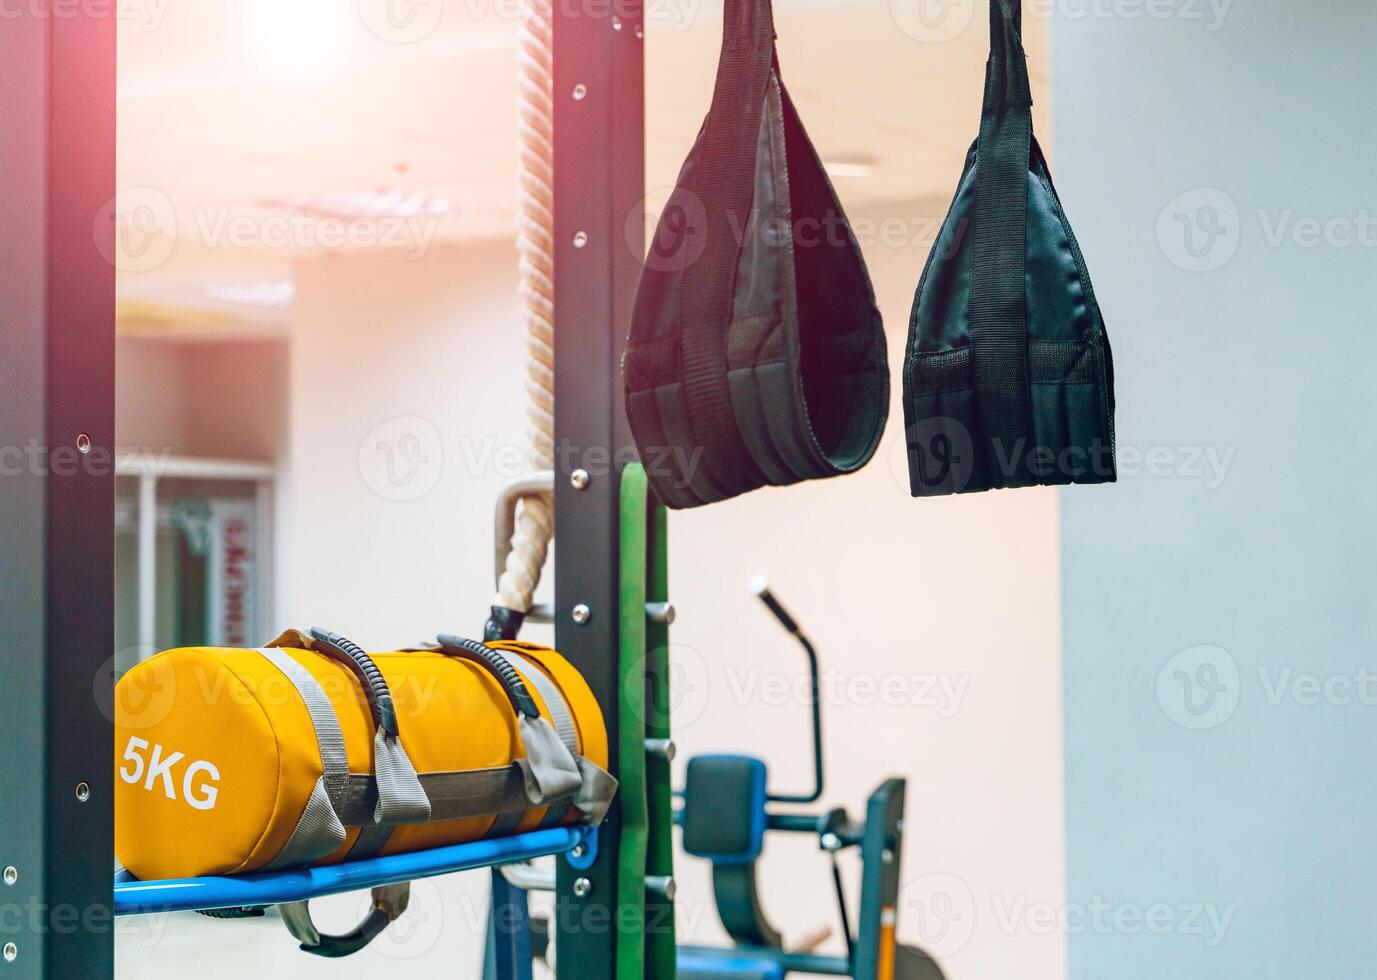 Träning remmar trx hängande från de vägg och stansning gul väska med 5 kg i Gym. Träning utrustning träna objekt för friska och krigisk konst foto